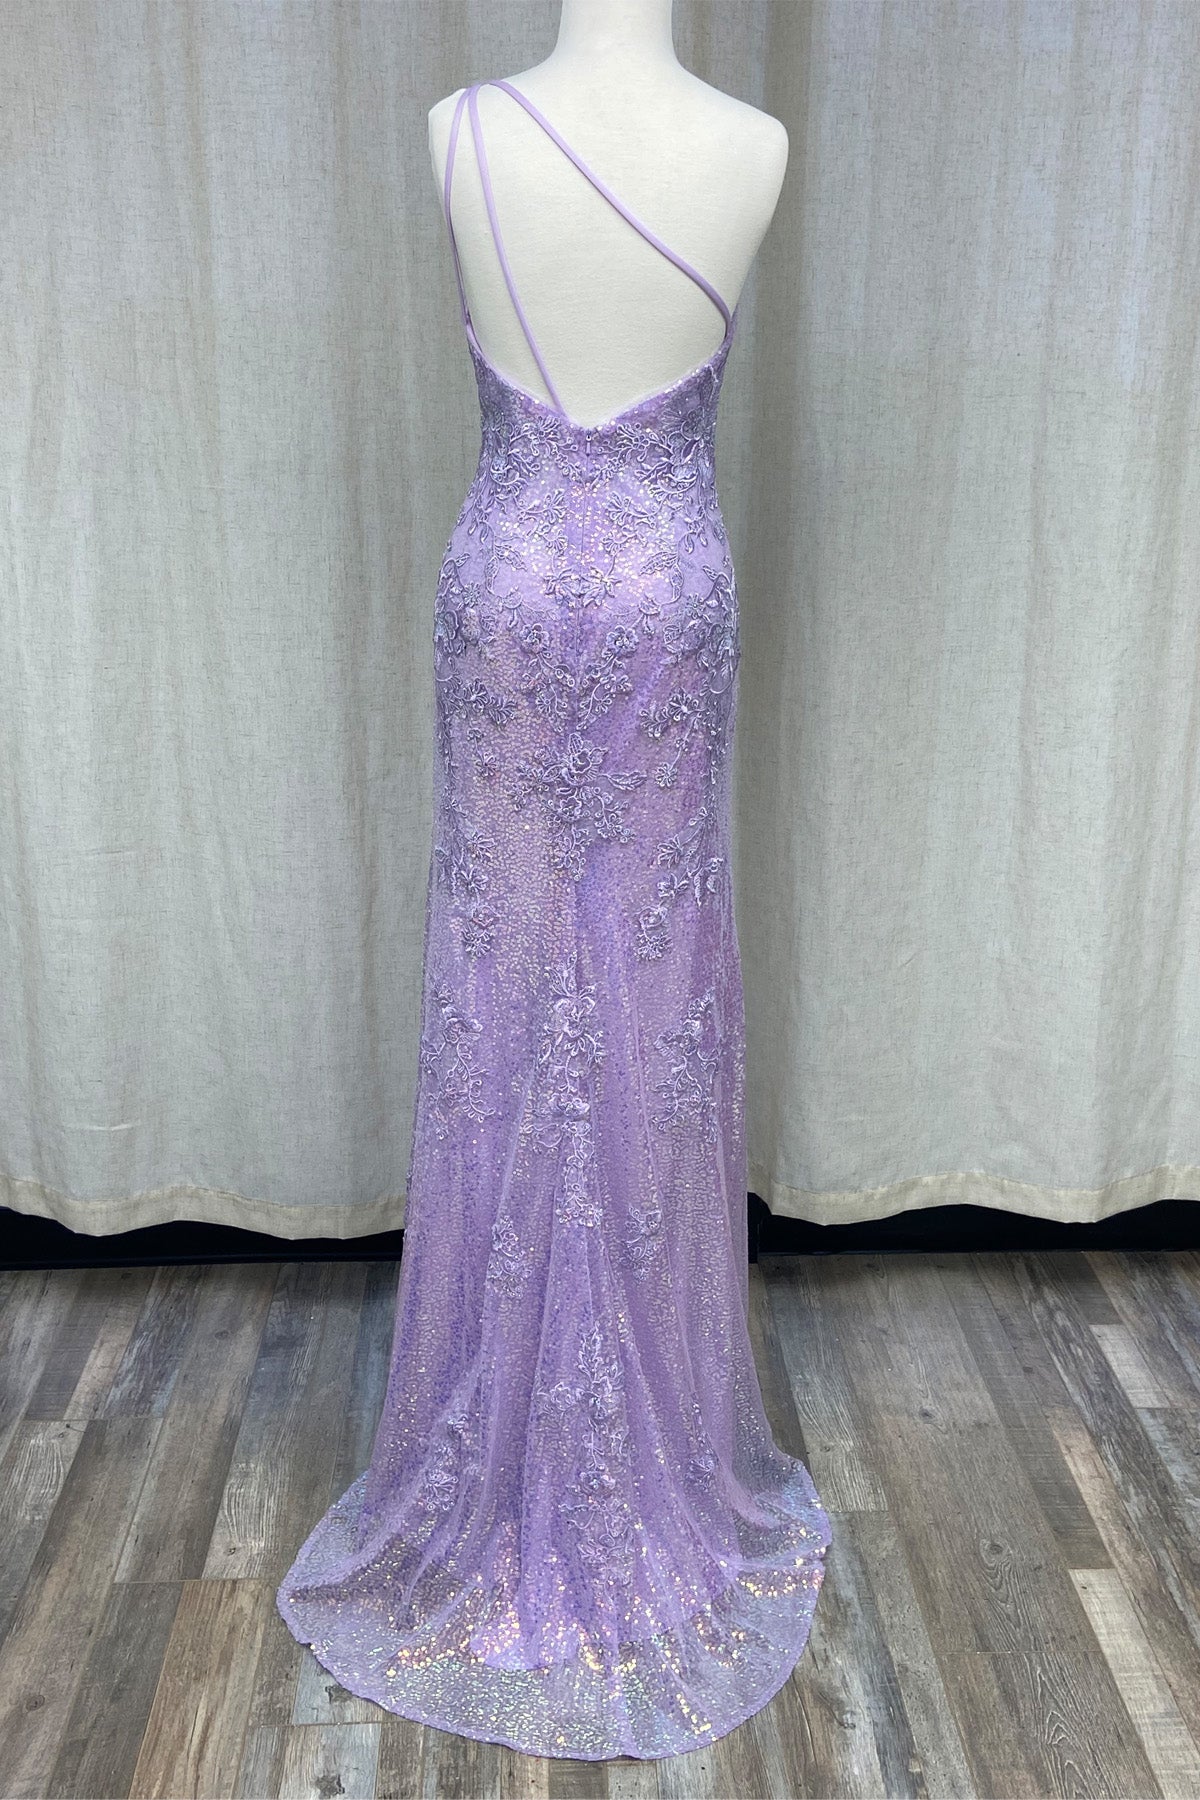 One Shoulder Embroidered Sequins Side Slit Long Prom Dress NXD1158-Prom Dress-smcfashion.com